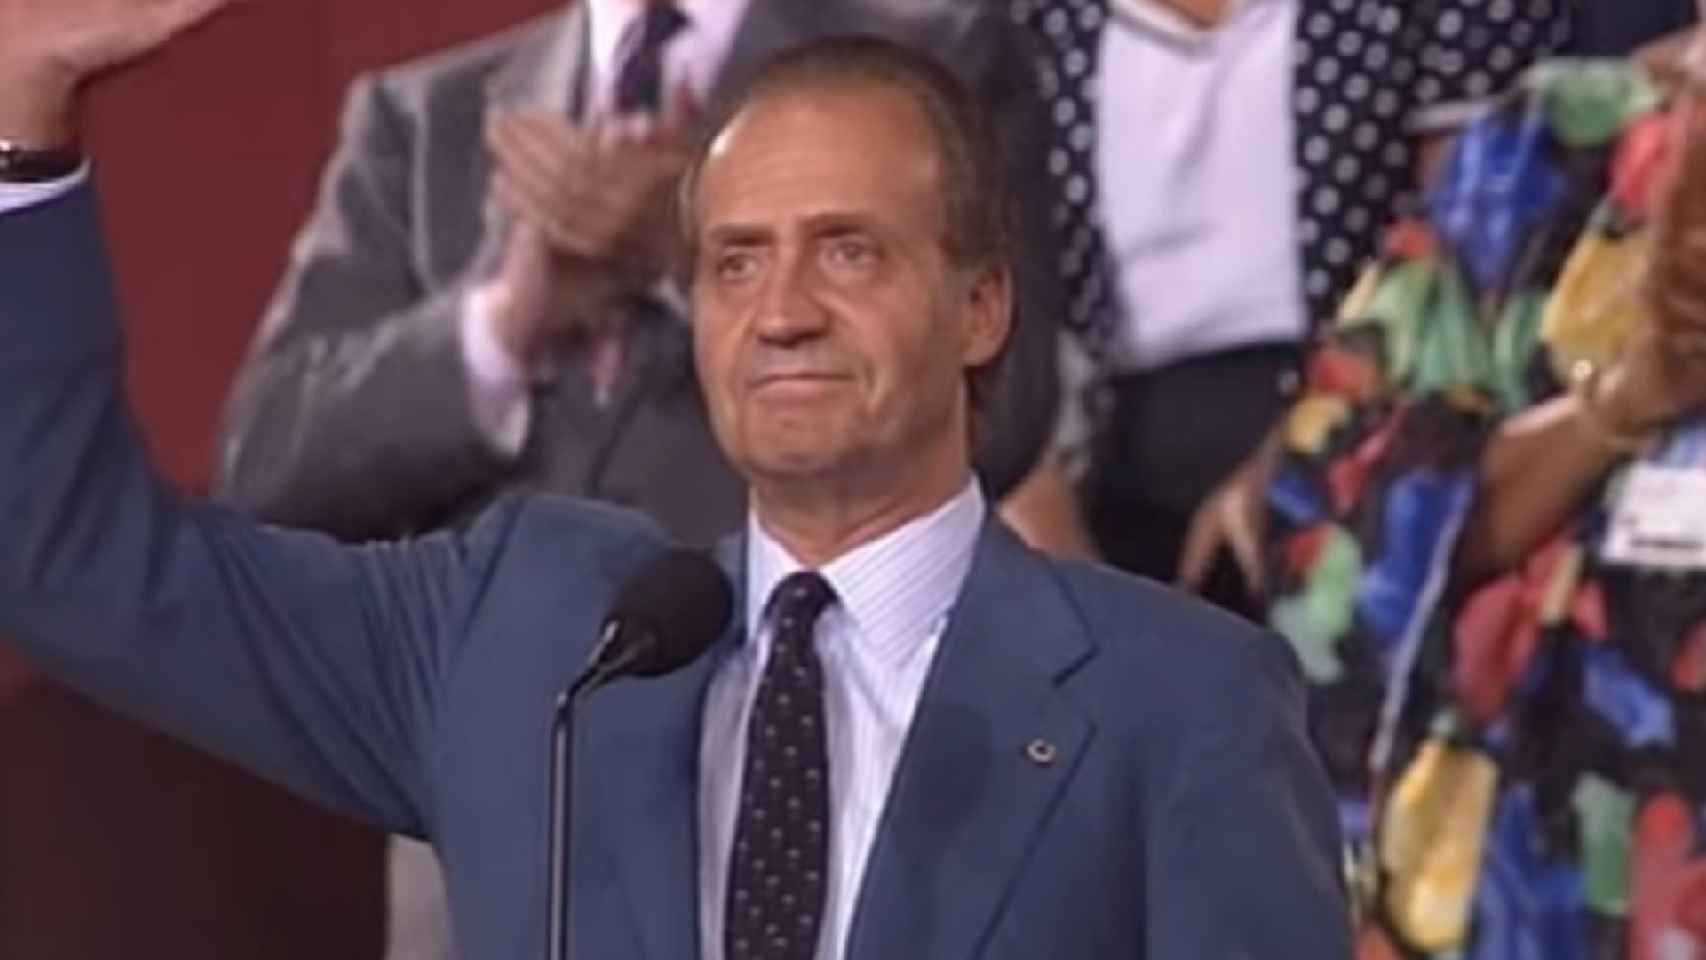 El Rey Juan Carlos I inaugurando los JJOO de Barcelona. No hubo atentados